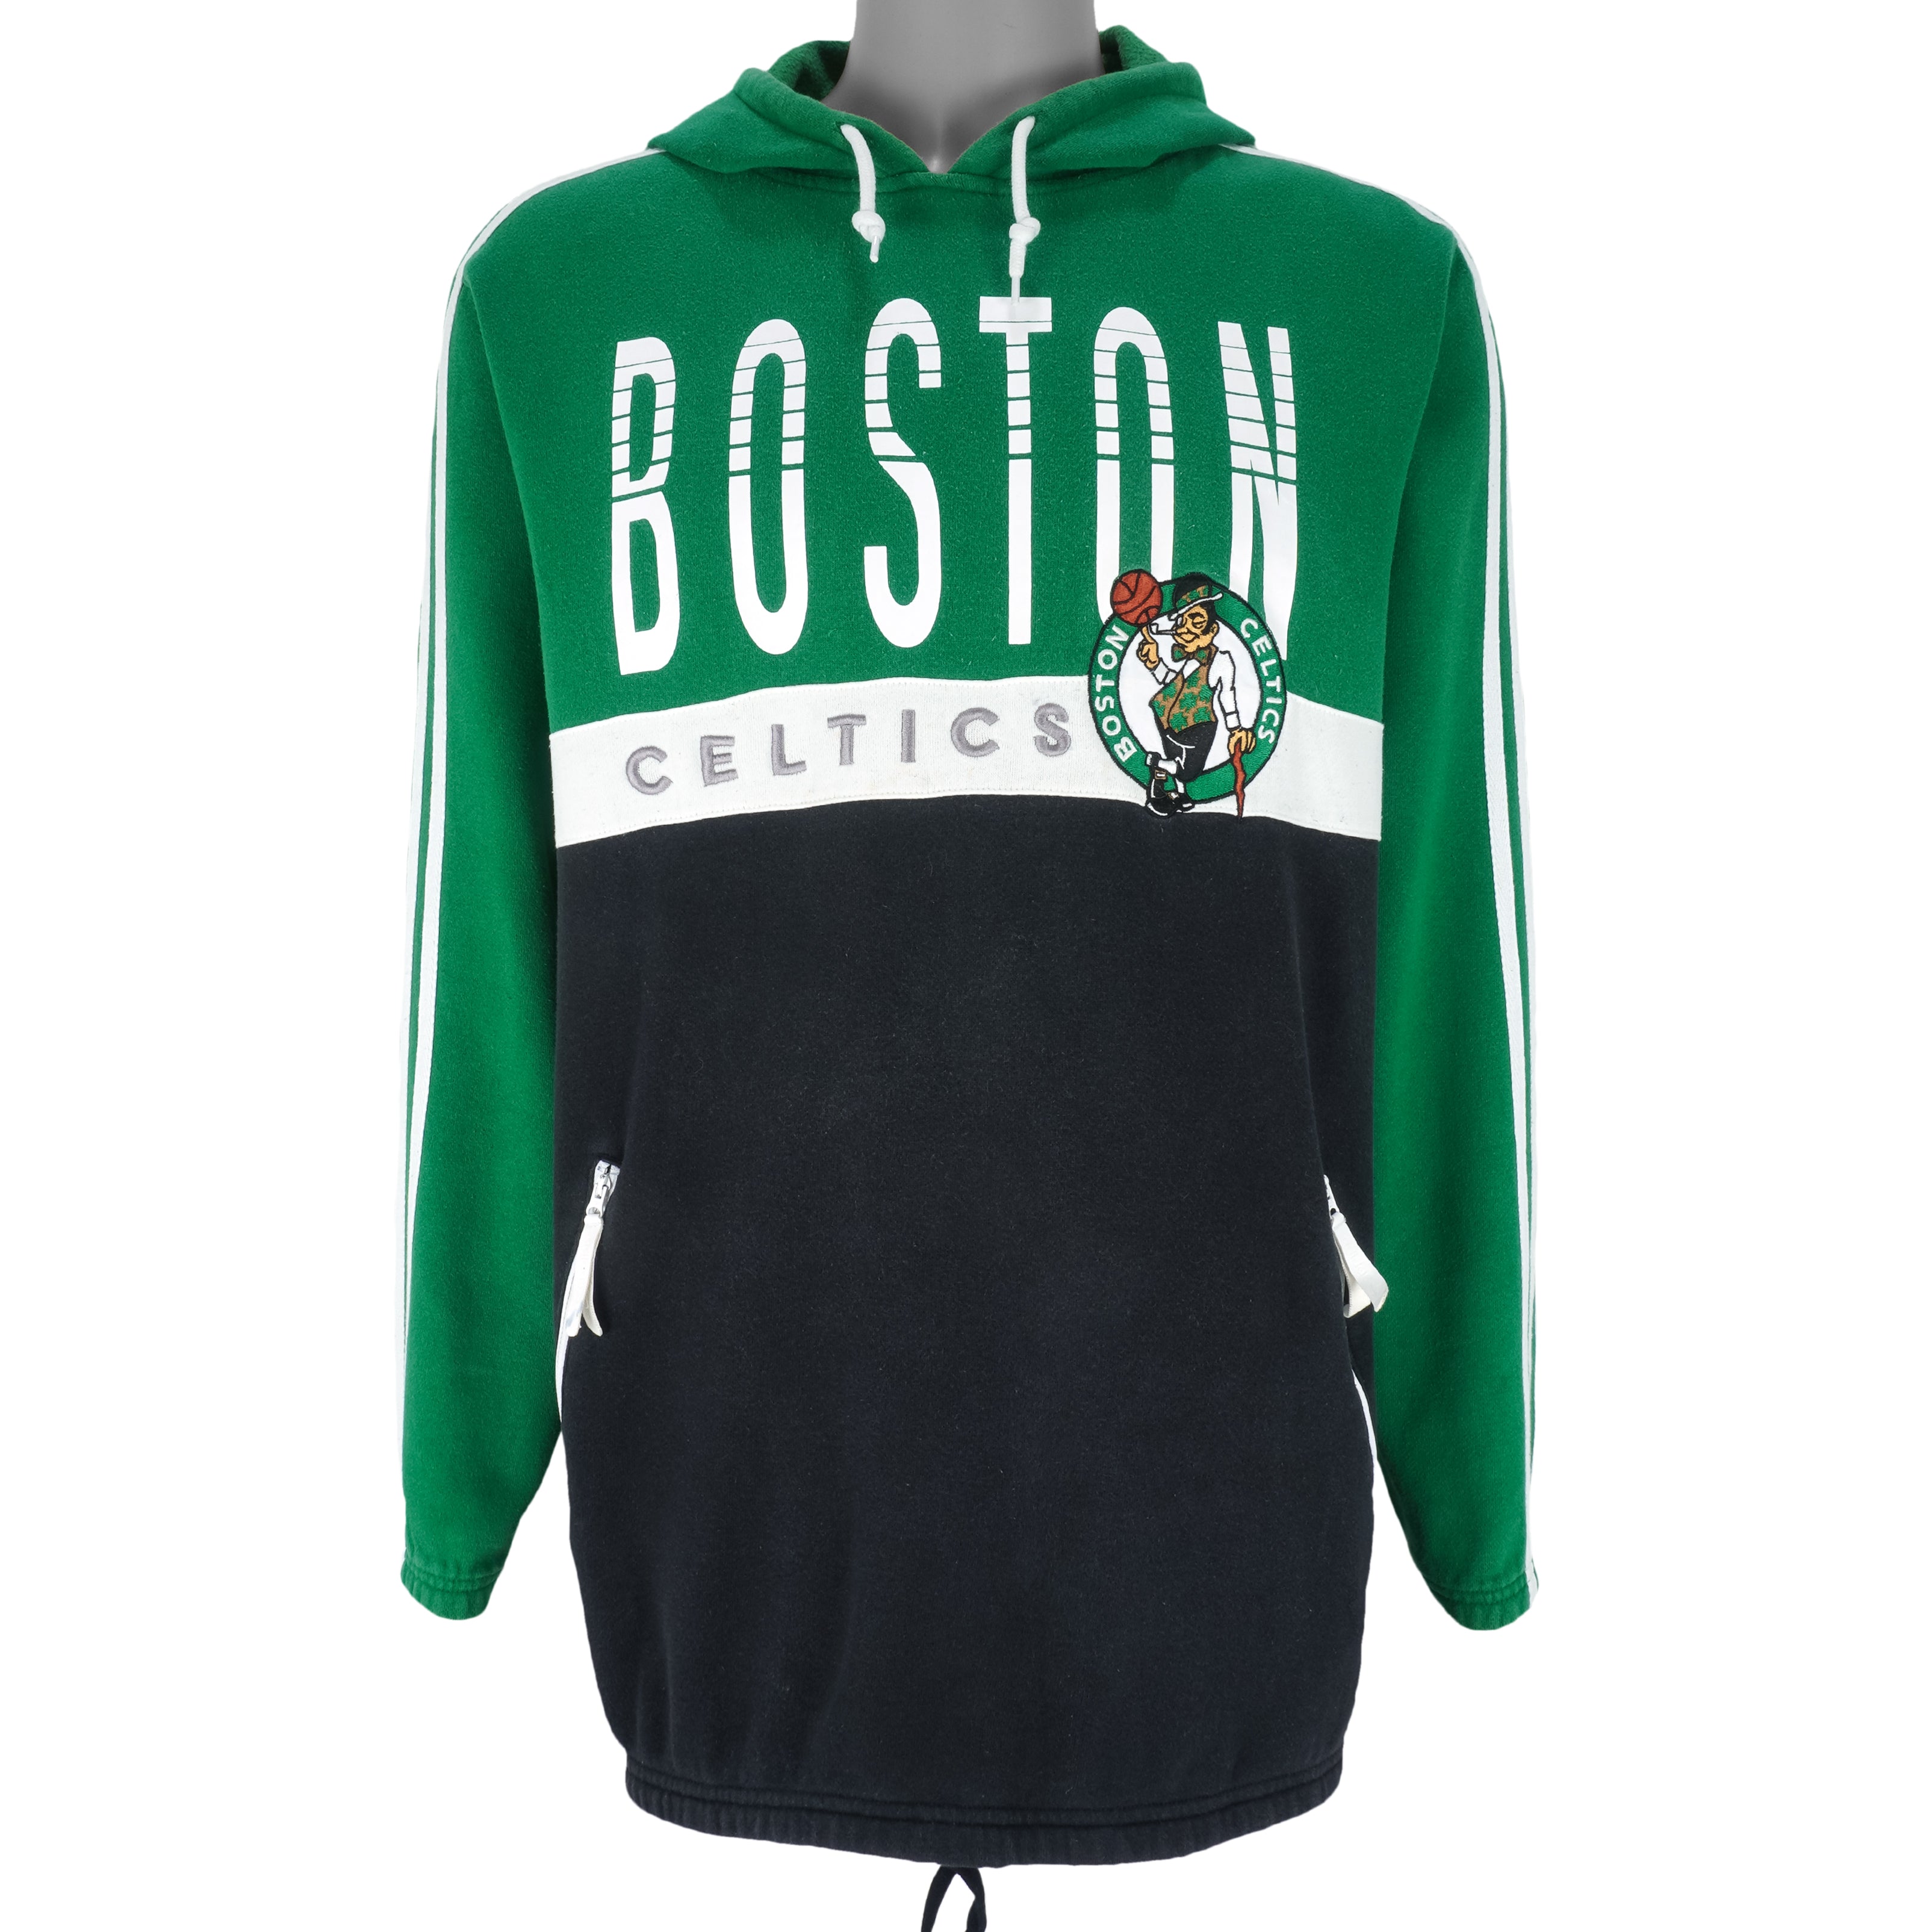 Vintage Adidas - Boston Celtics Large – Vintage